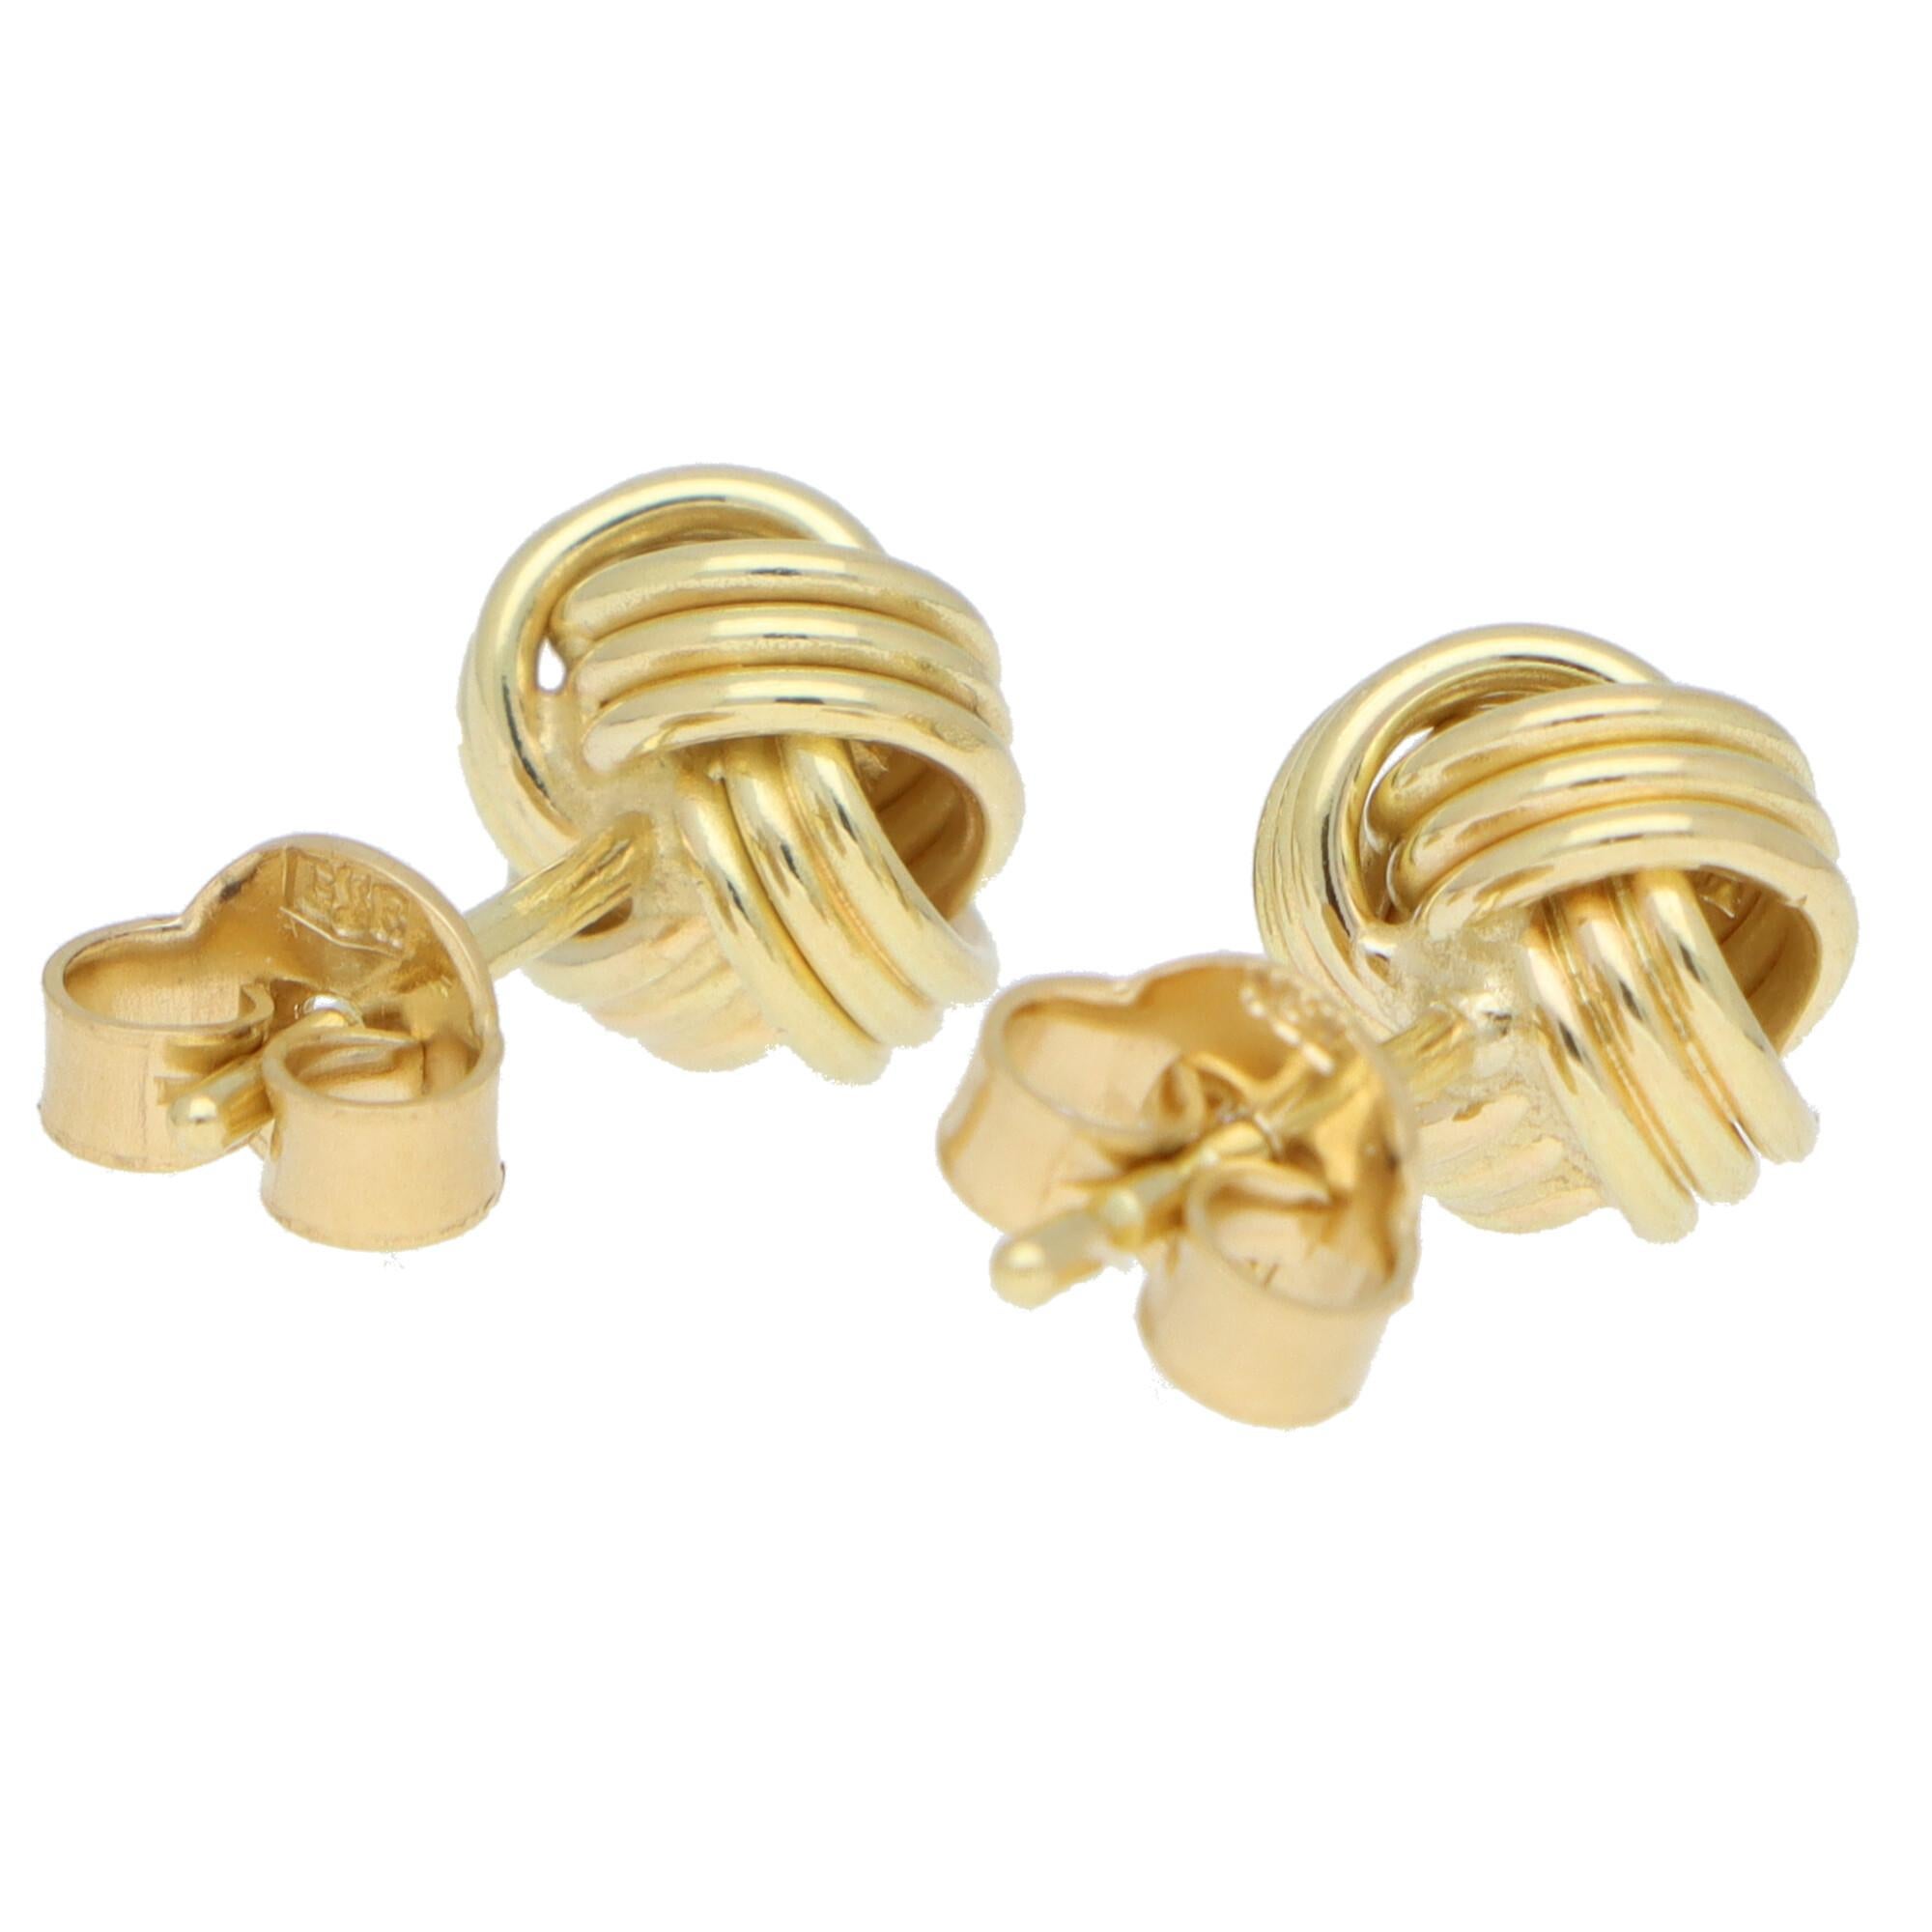 Women's or Men's Woven Knot Stud Earrings Set in 18k Yellow Gold